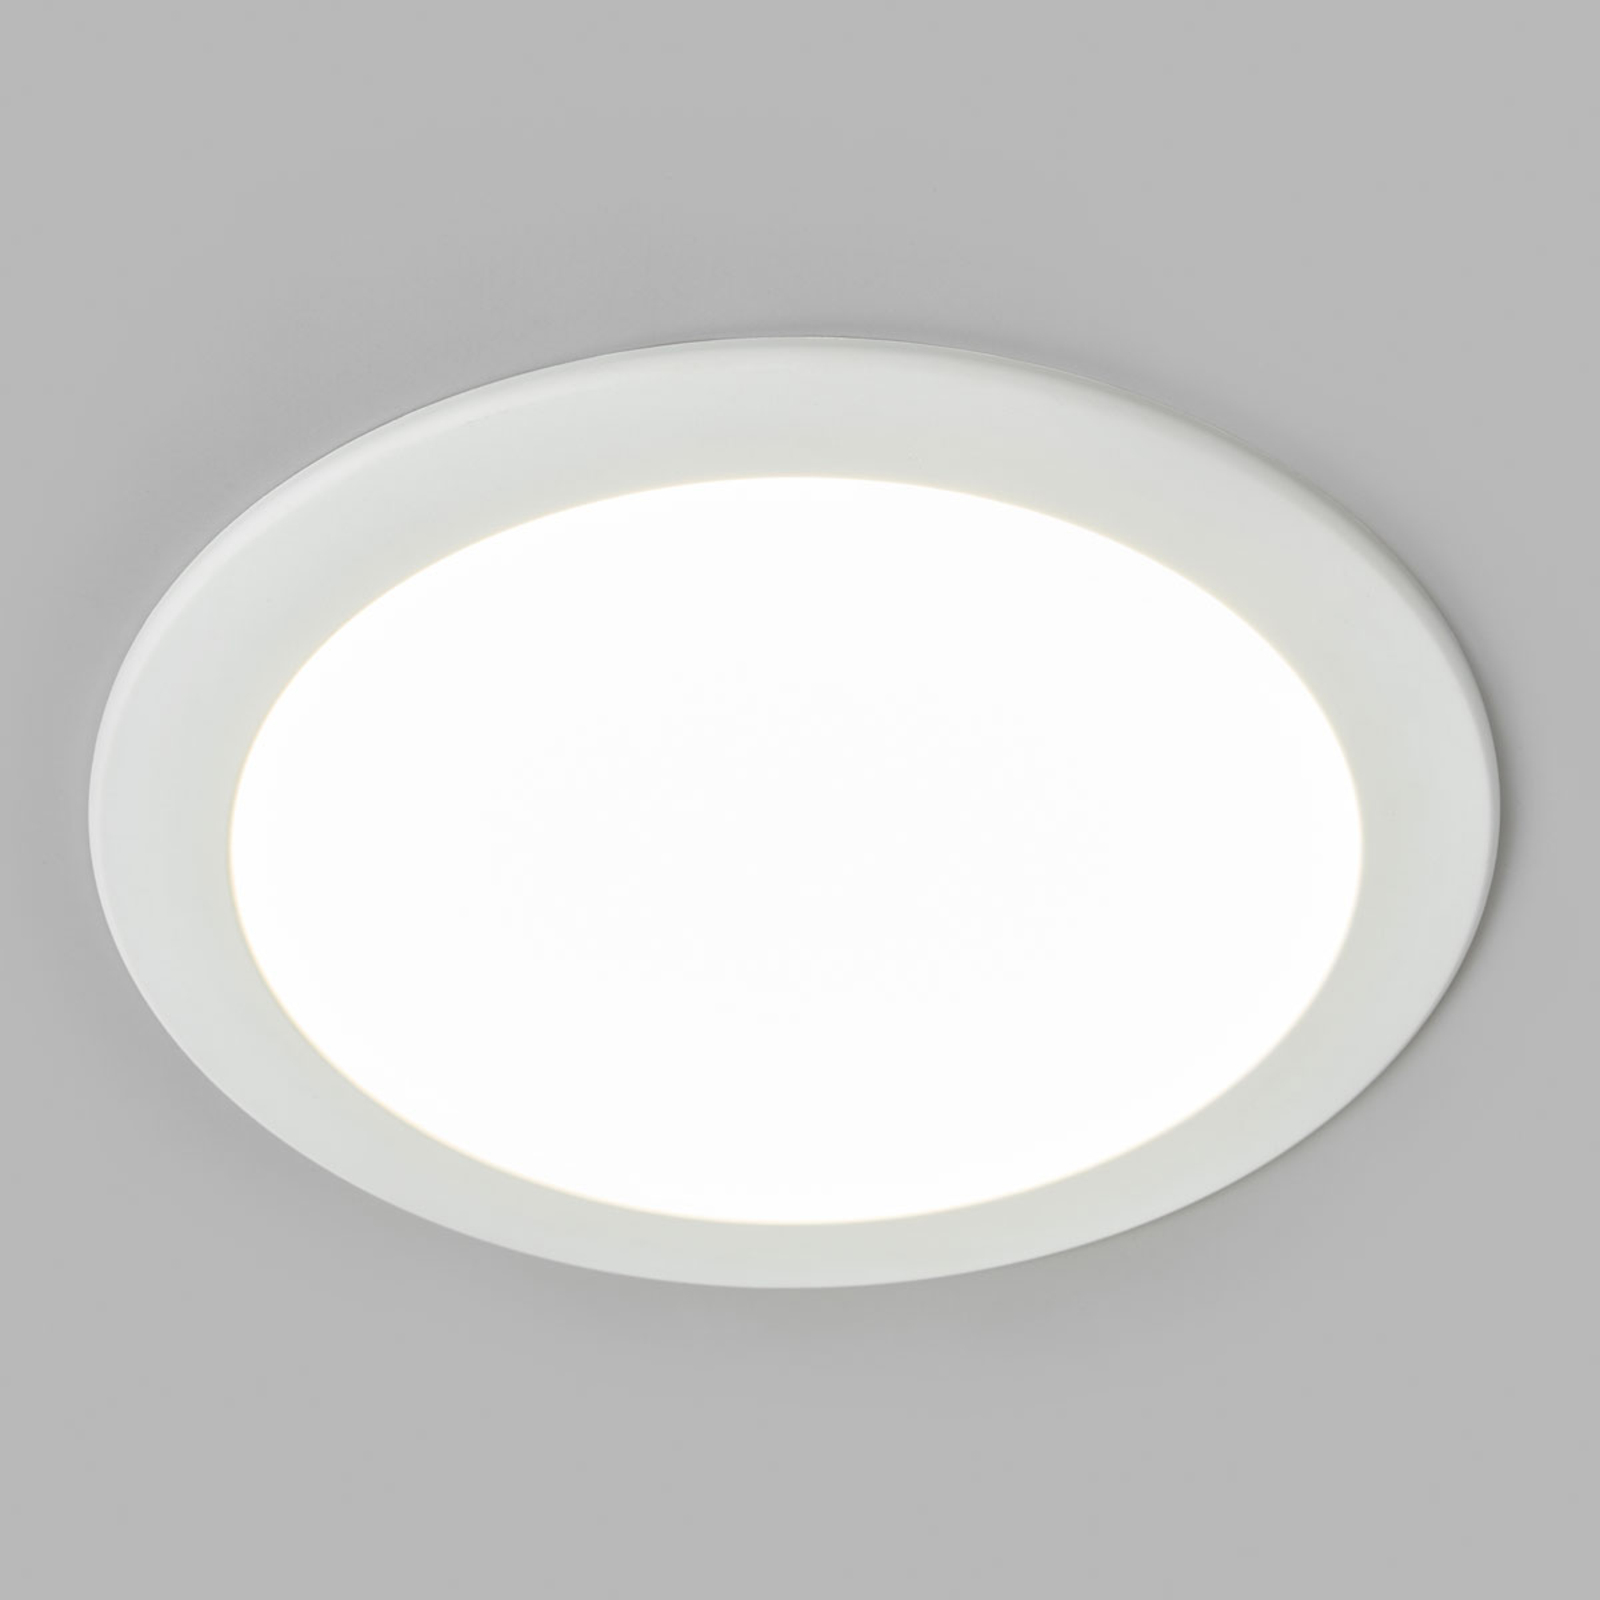 Joki LED downlight white 4000 K round 24 cm